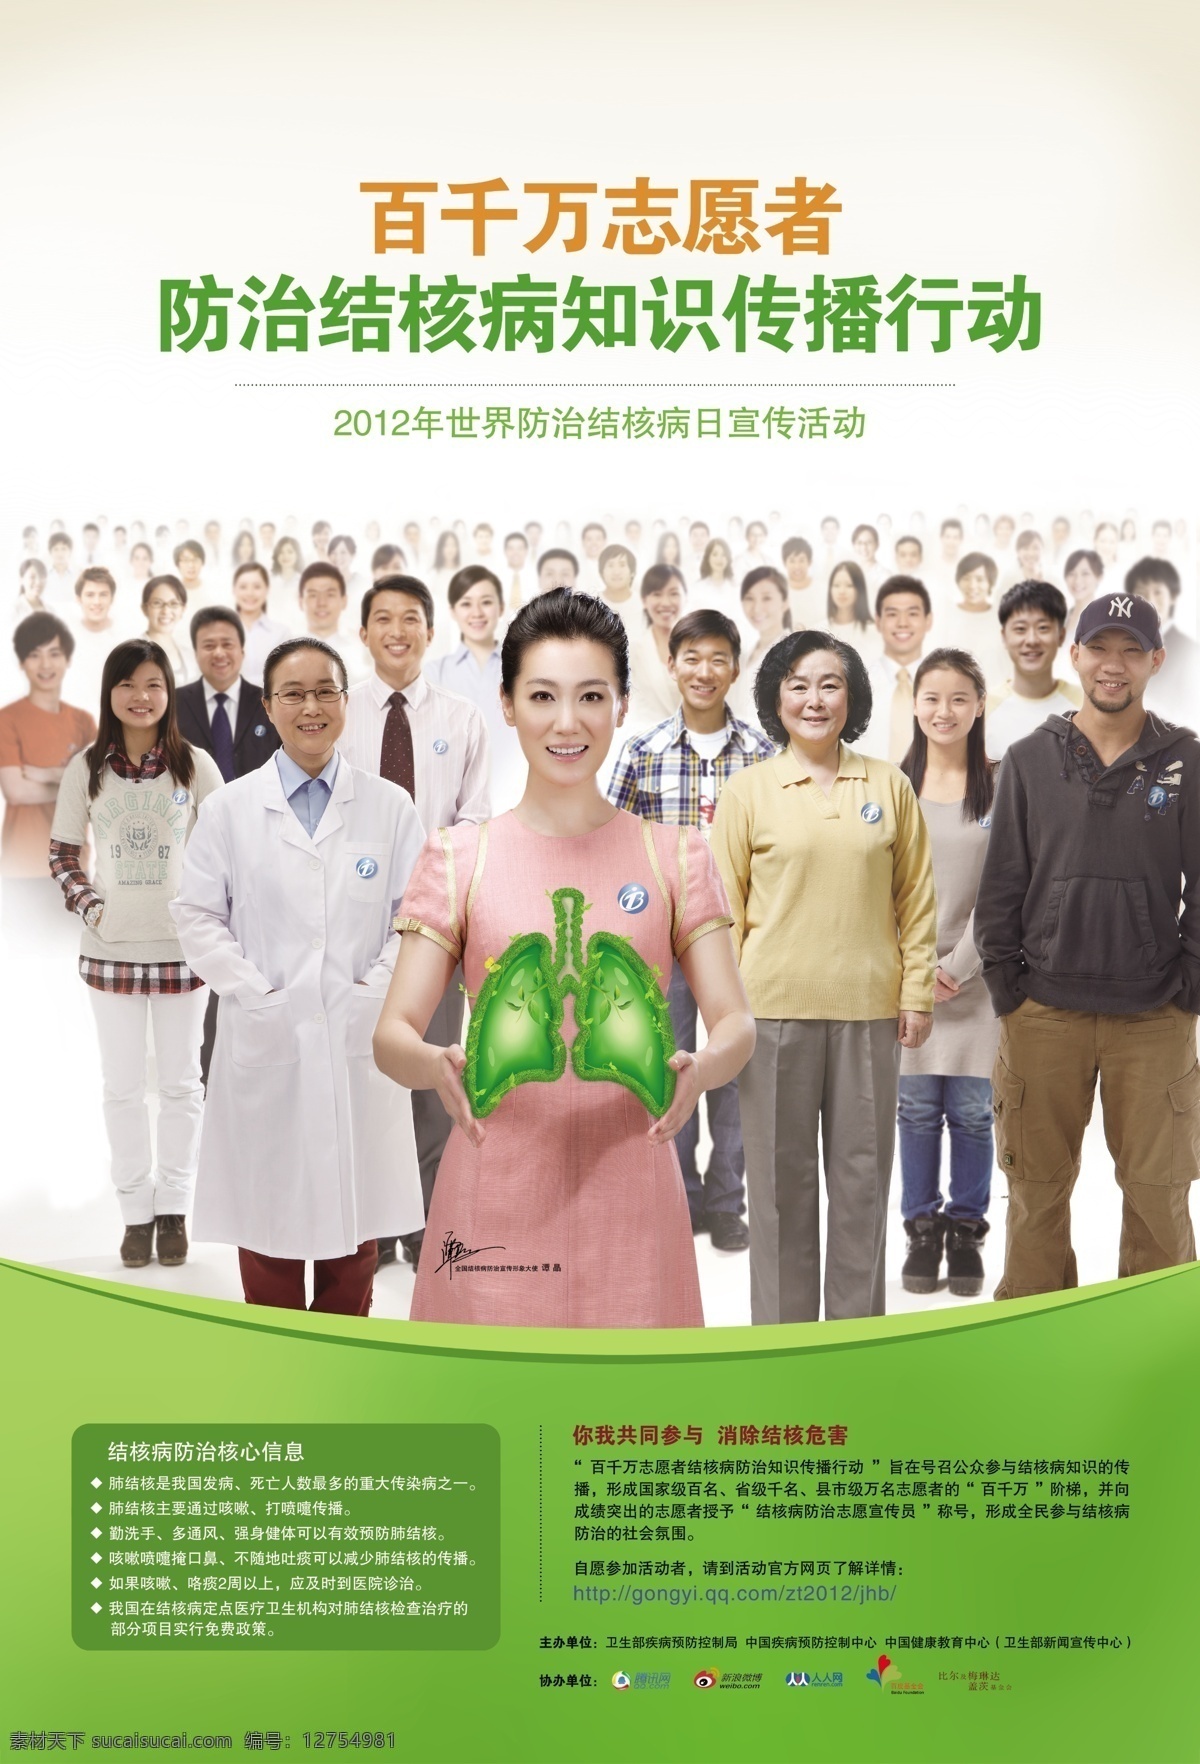 2012 年 结核病 日 宣传海报 结核病海报 结核人物 绿色的肺 美女 志愿者 肺结核 绿色 谭晶 宣传 活动 广告设计模板 源文件